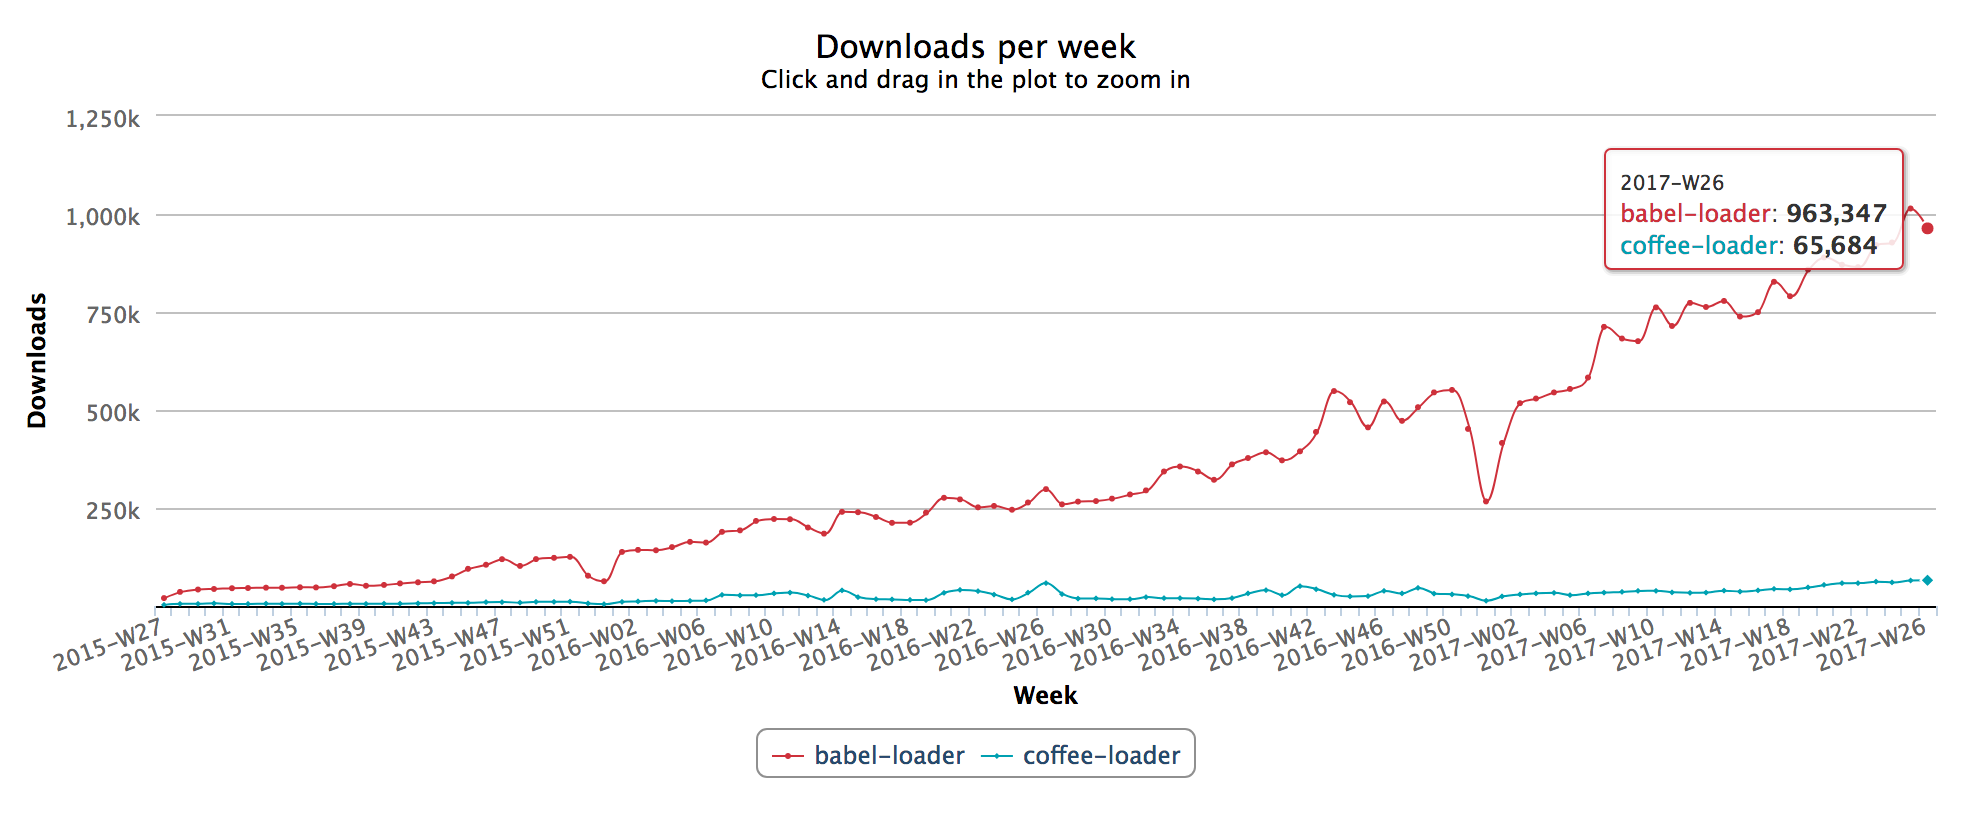 Downloads per week, babel-loader vs. coffee-loader